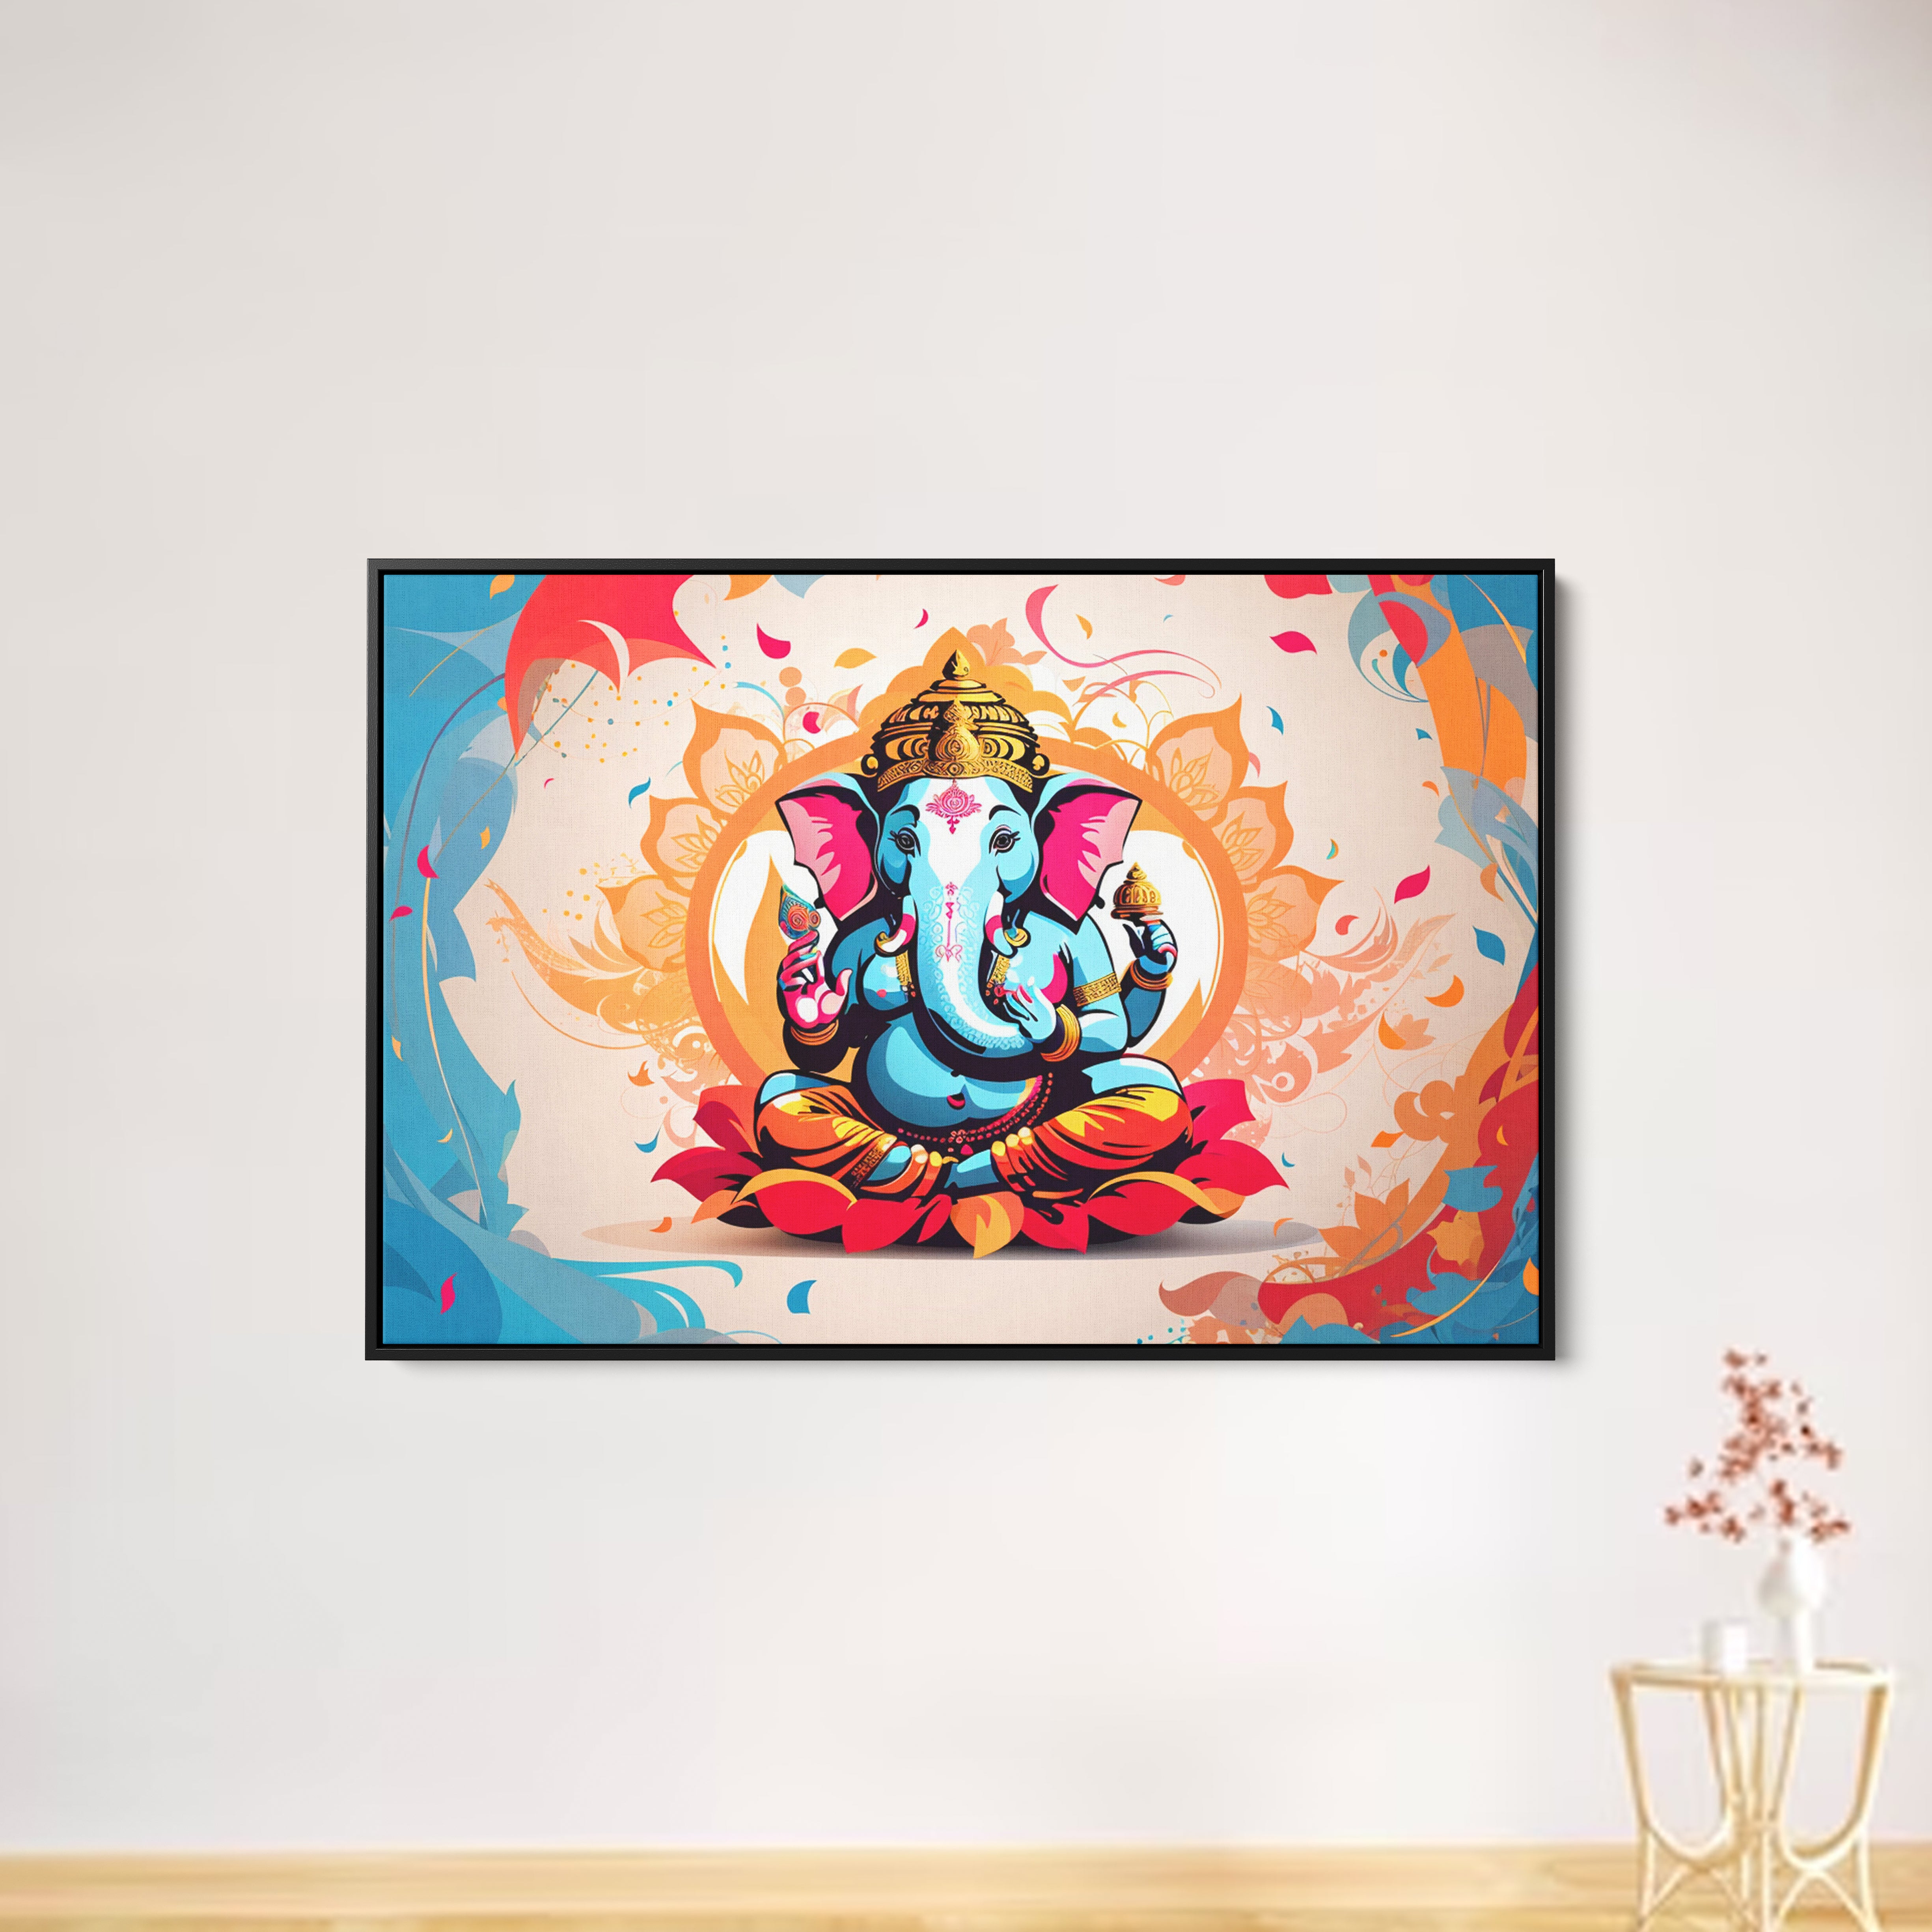 Lord Ganesha Canvas Abstract Wall Painting